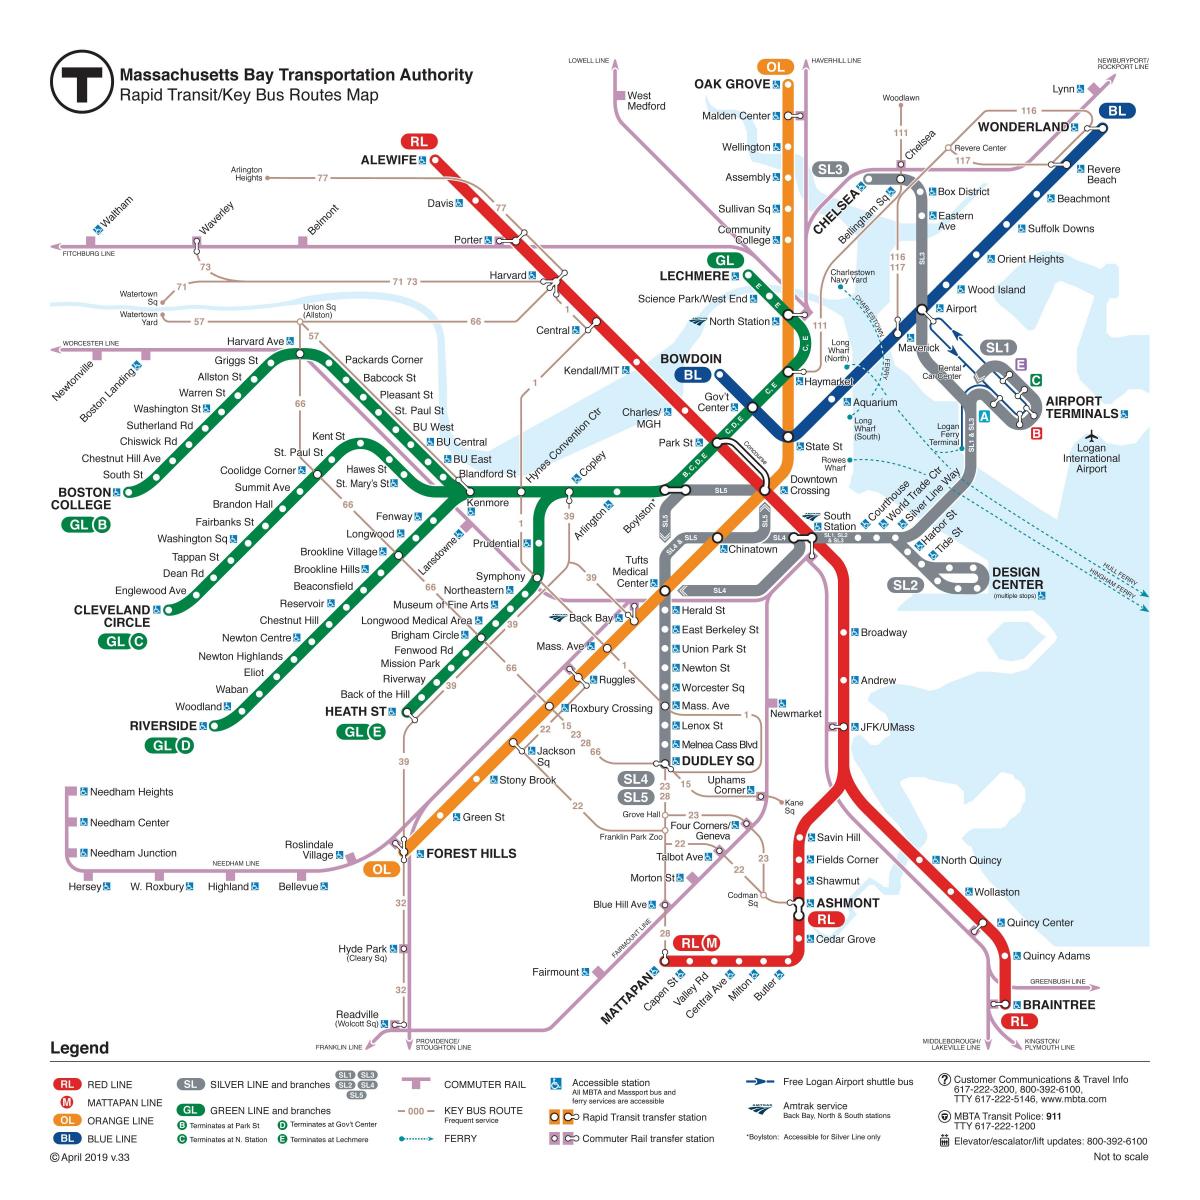 Mapa stacji metra w Bostonie